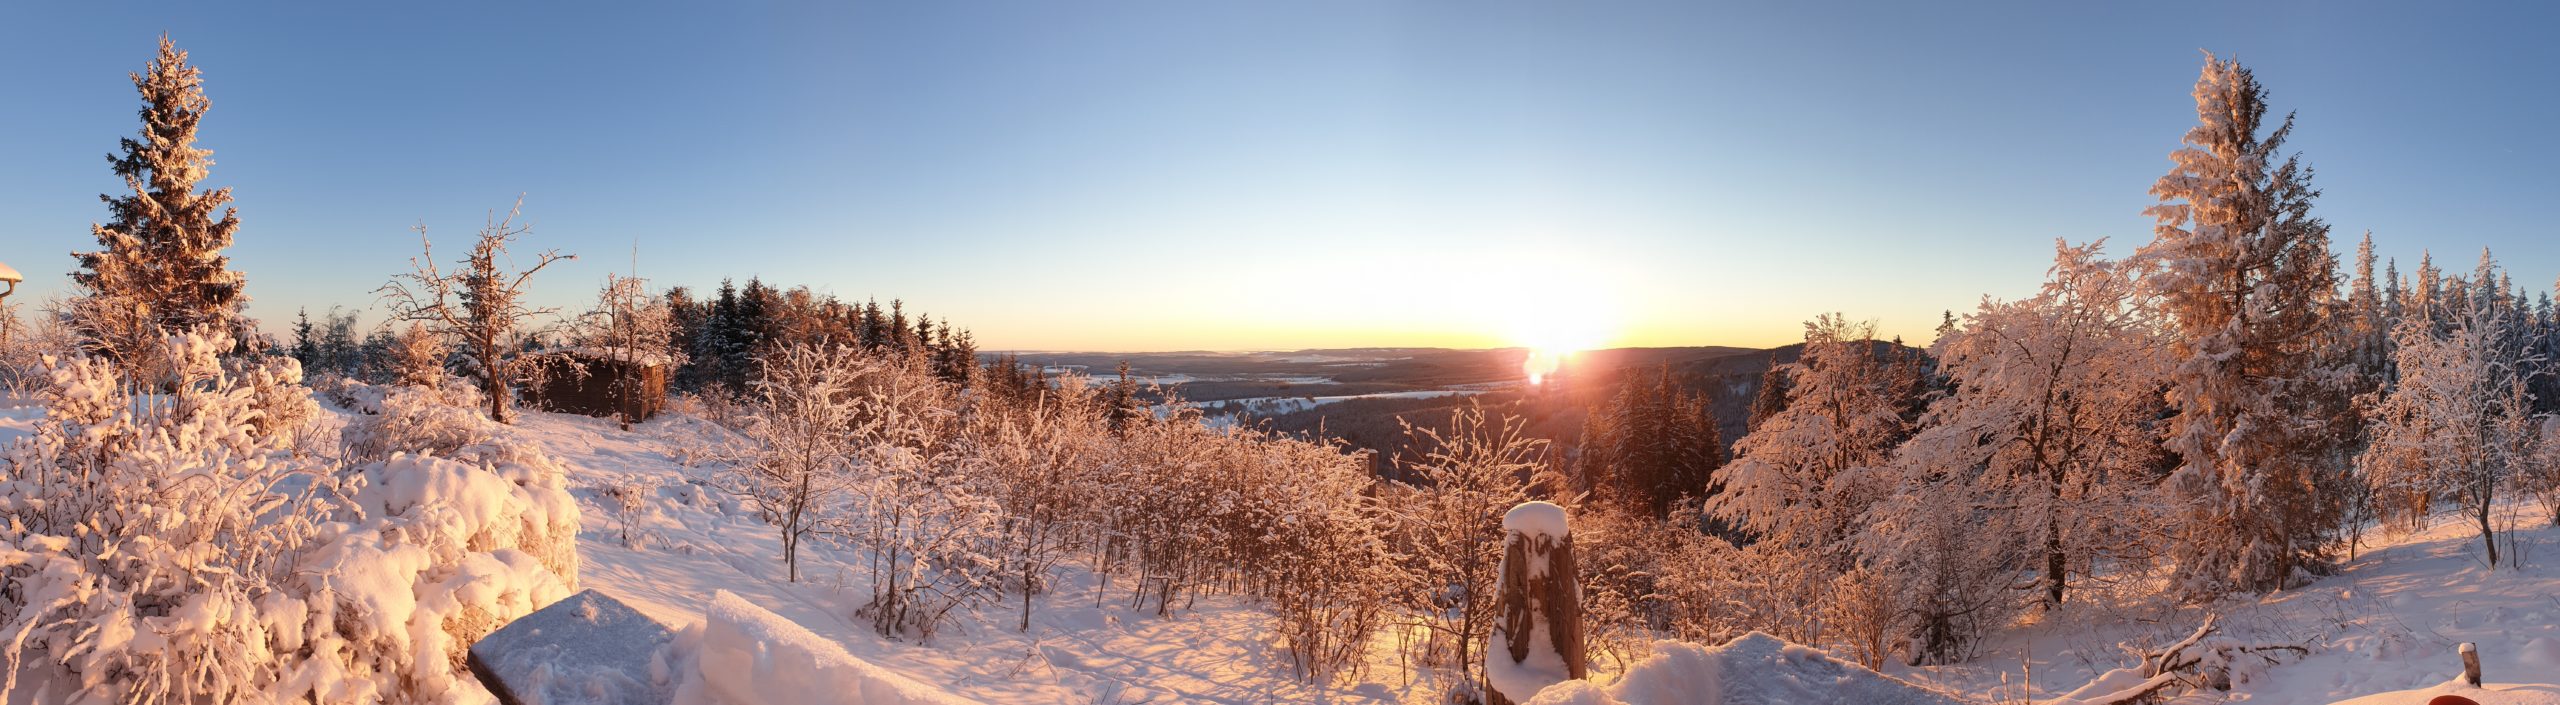 Winter landscape around Ilmenau